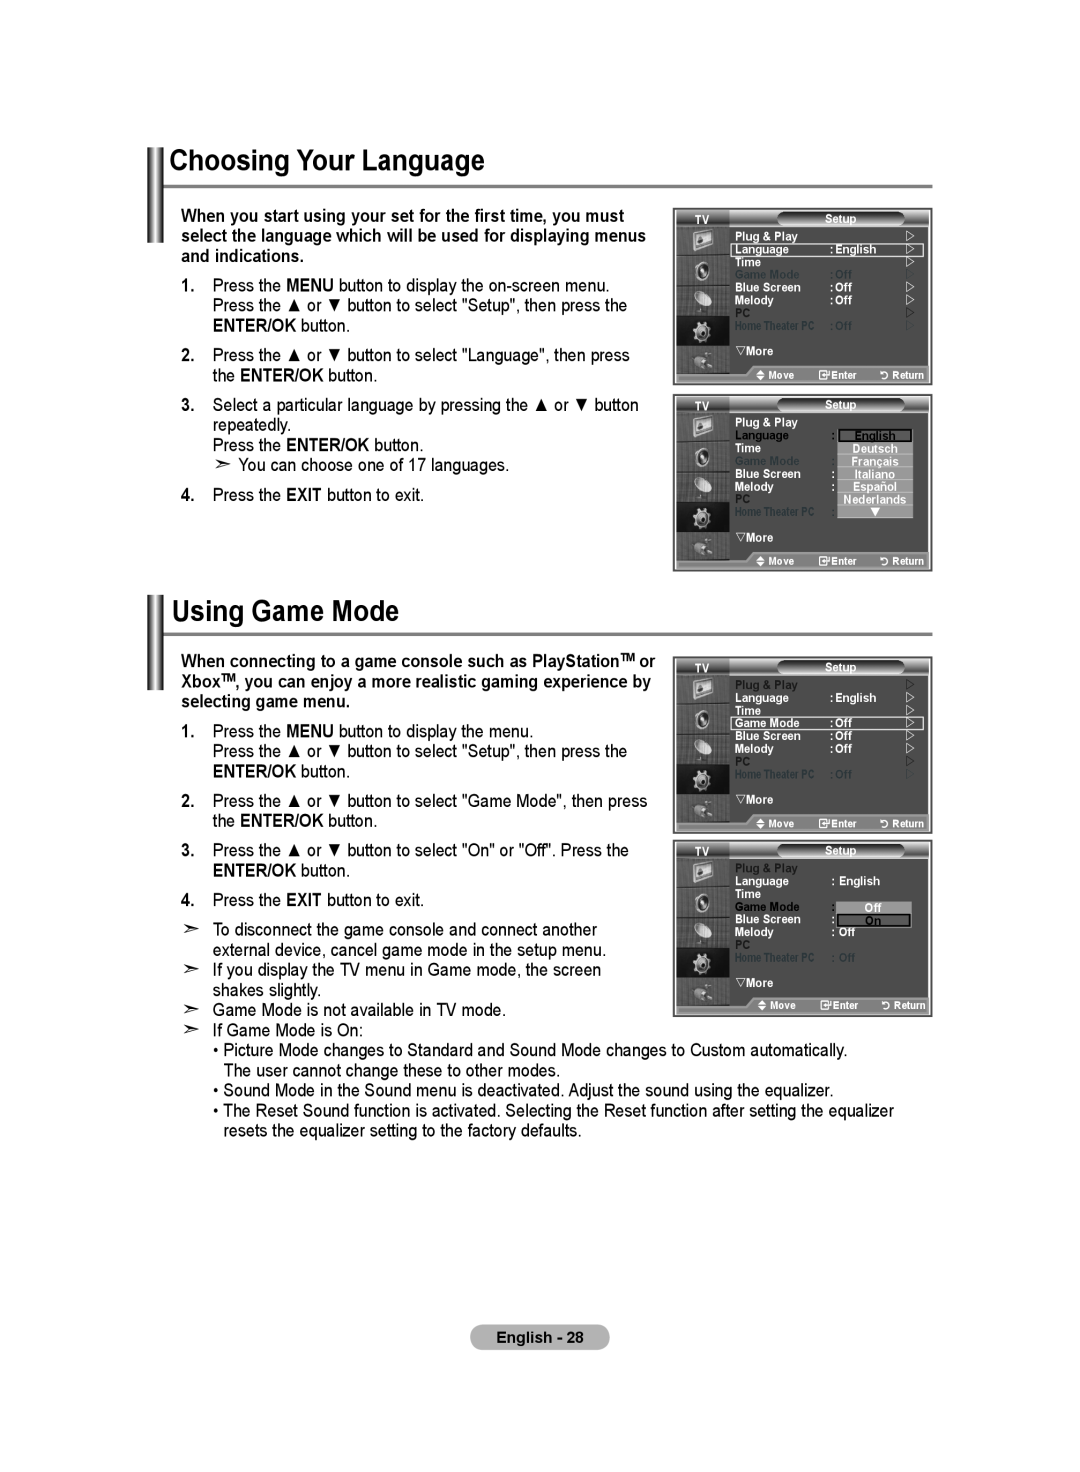 Samsung LE46S8, LE37S8, LE32S8, LE40S8, LE26S8 manual Choosing Your Language, Using Game Mode, ENTER/OK button 